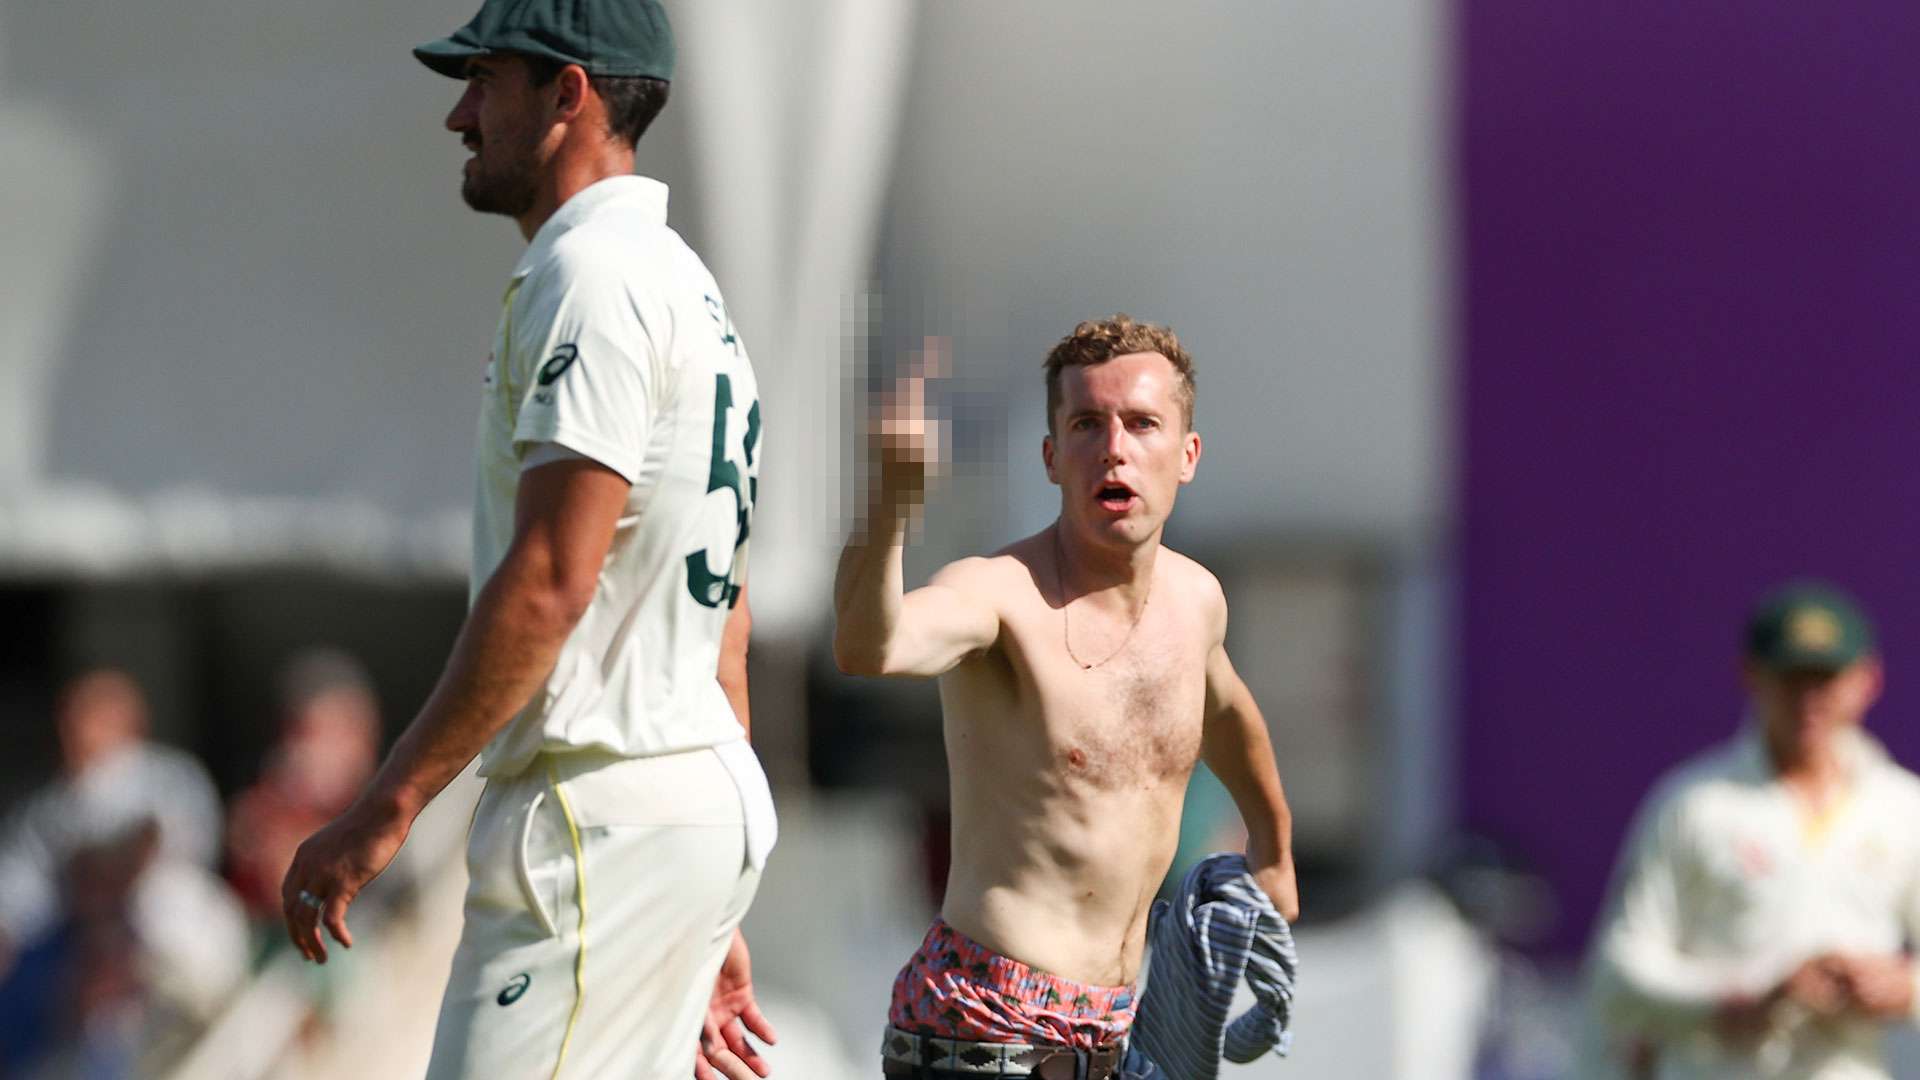 Der Idiot beschimpfte die australischen Cricketspieler